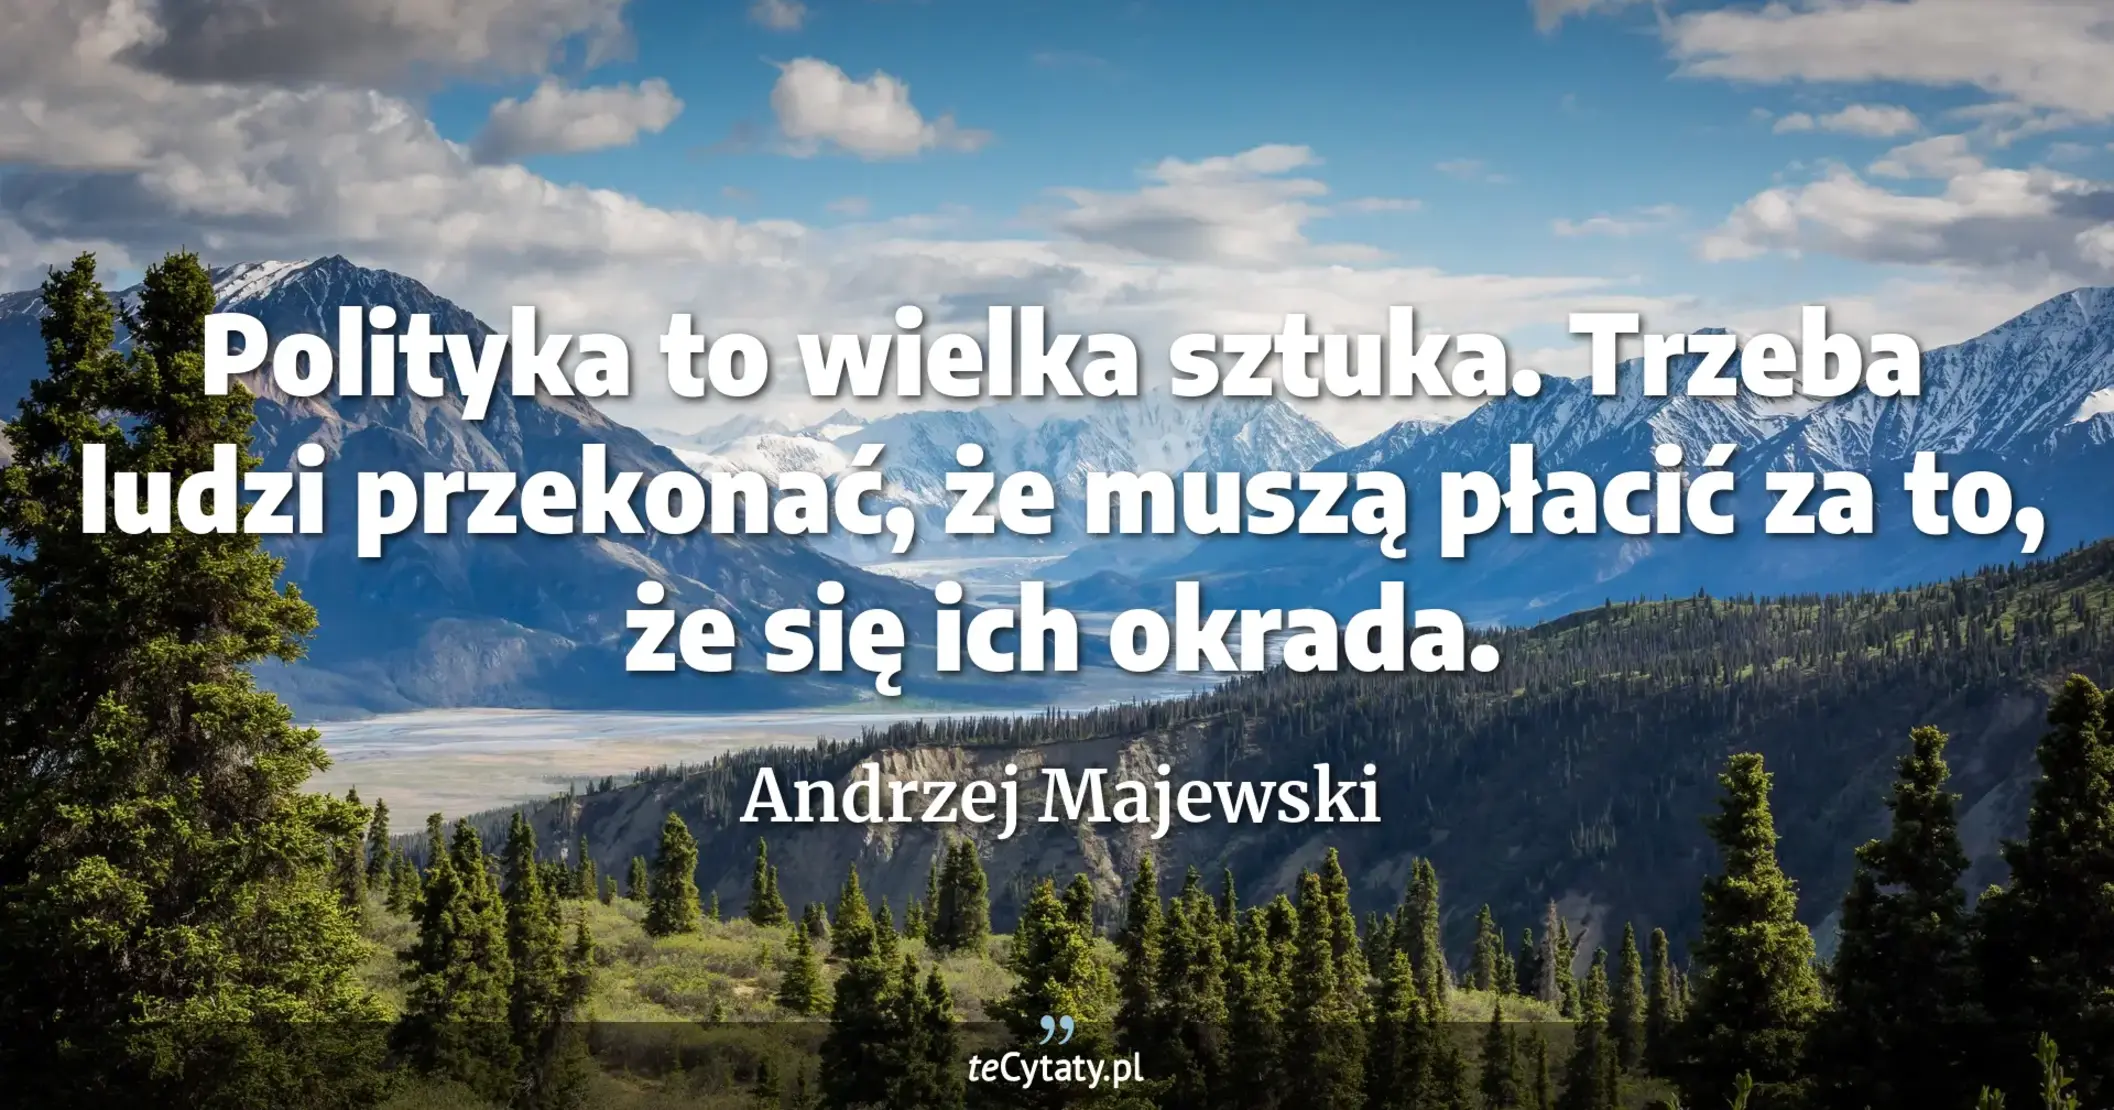 Polityka to wielka sztuka. Trzeba ludzi przekonać, że muszą płacić za to, że się ich okrada. - Andrzej Majewski